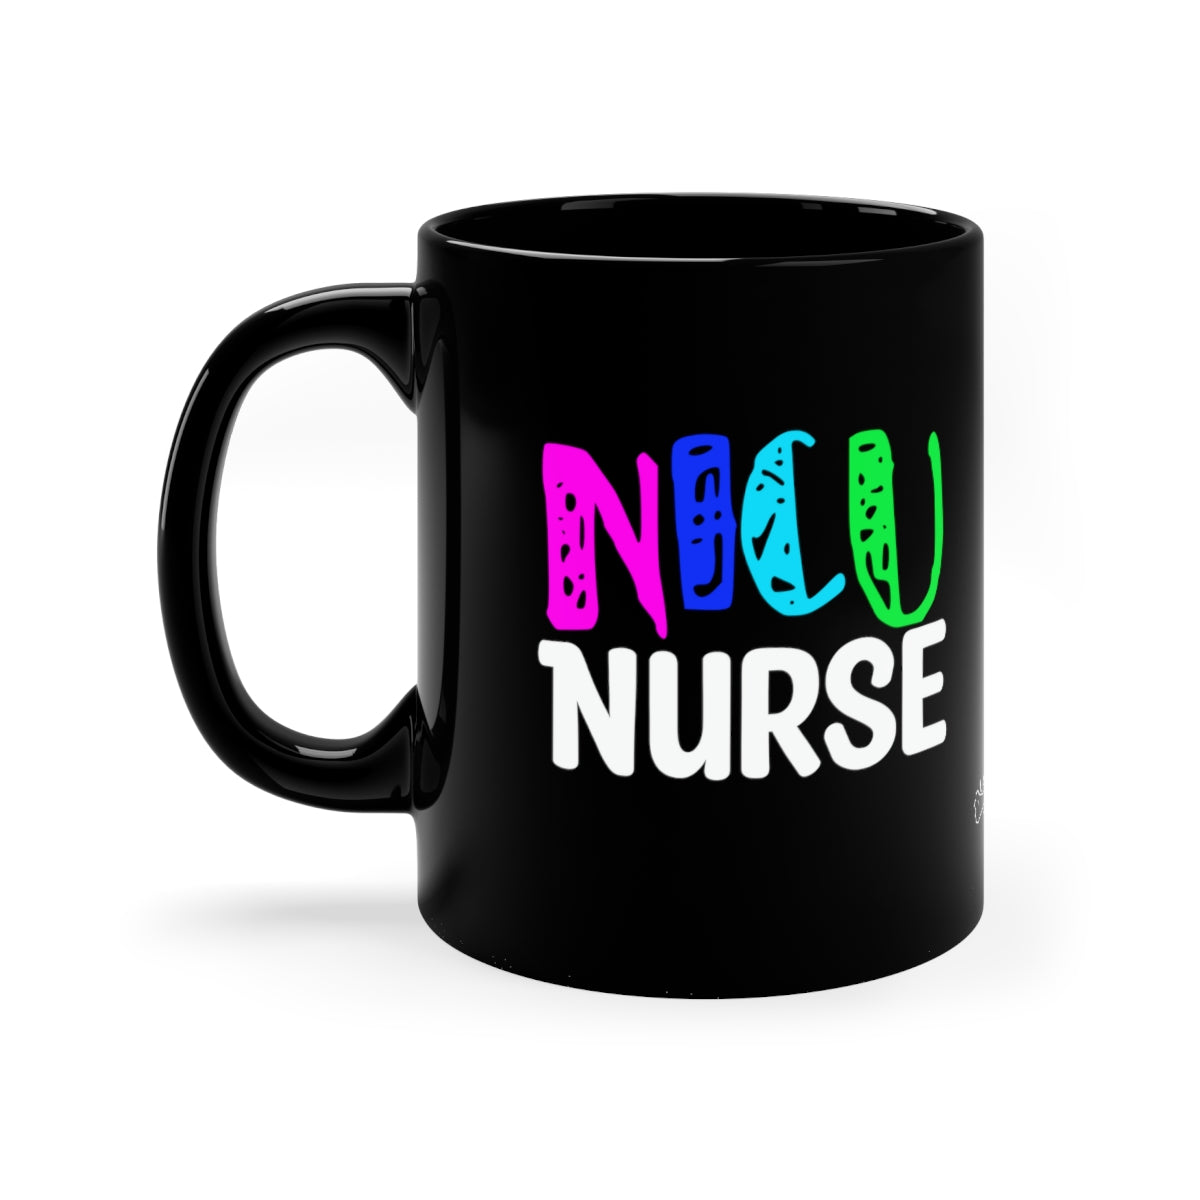 NICU Nurse 11oz Black Mug